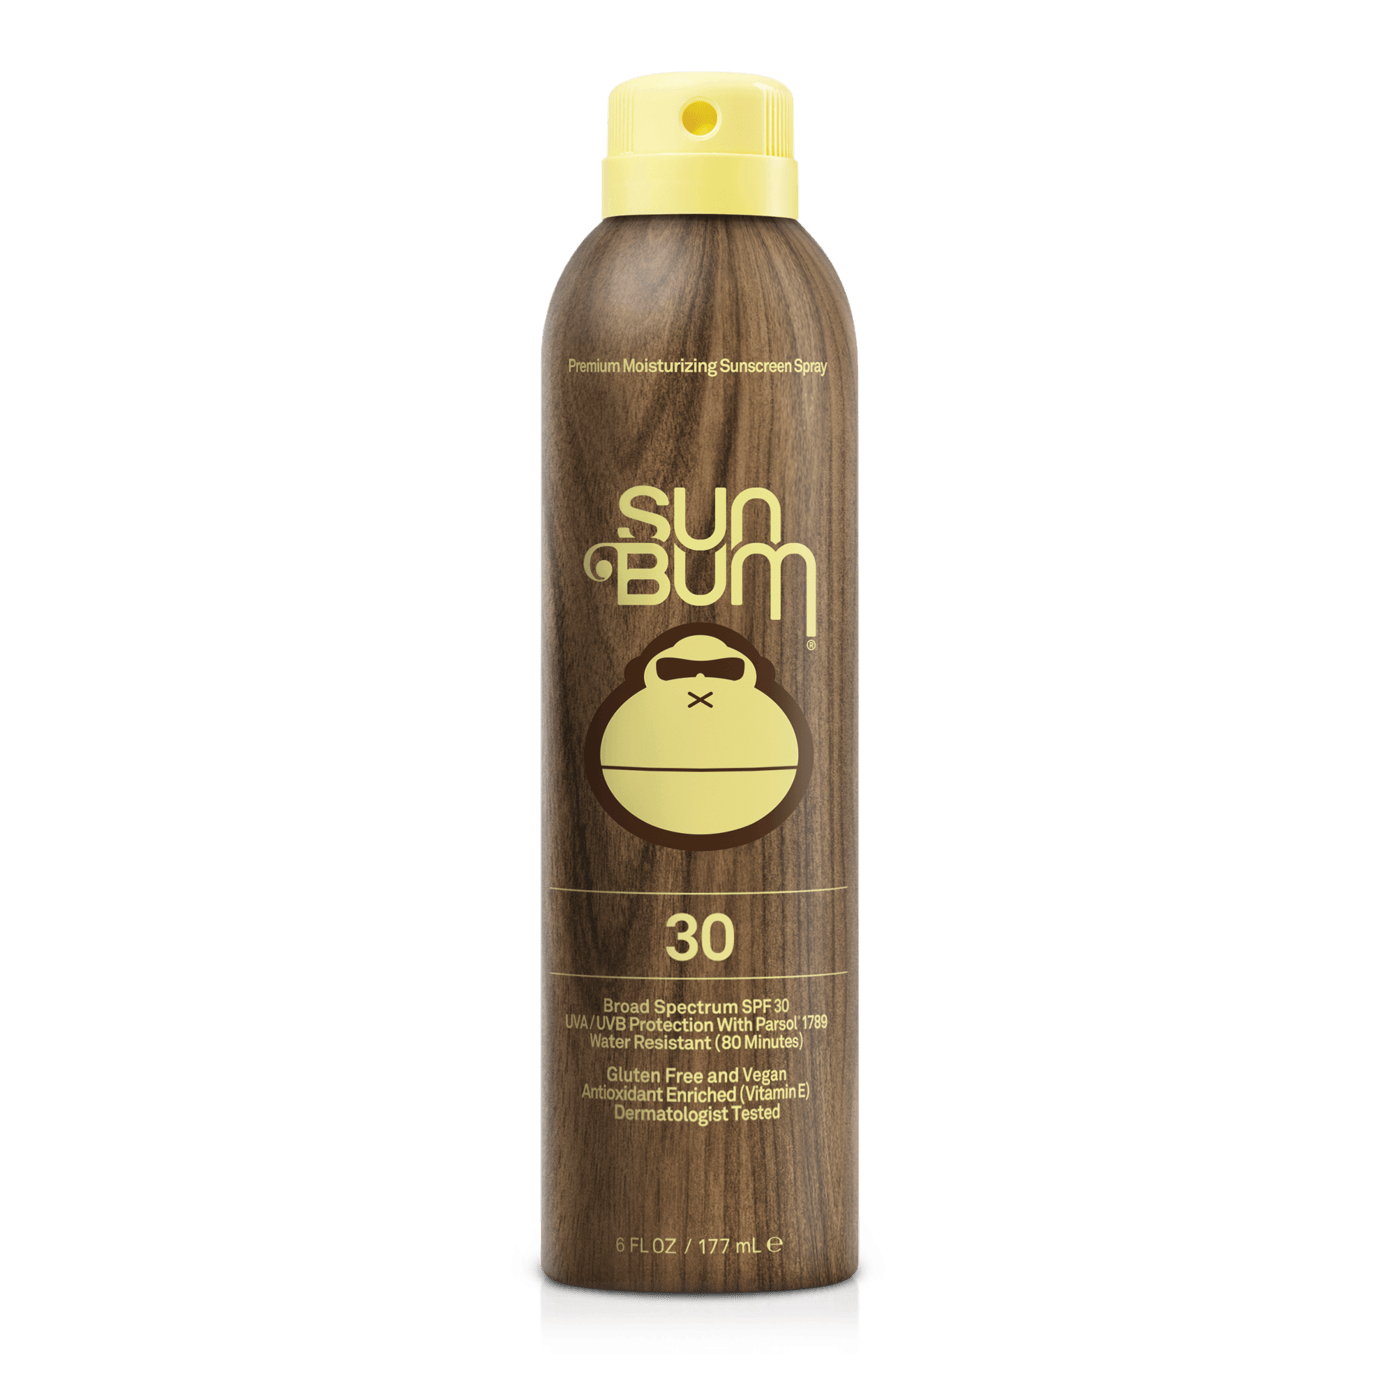 SUN BUM Original SPF 30 Sunscreen Spray 6oz ACCESSORIES - Sunscreen Sun Bum 